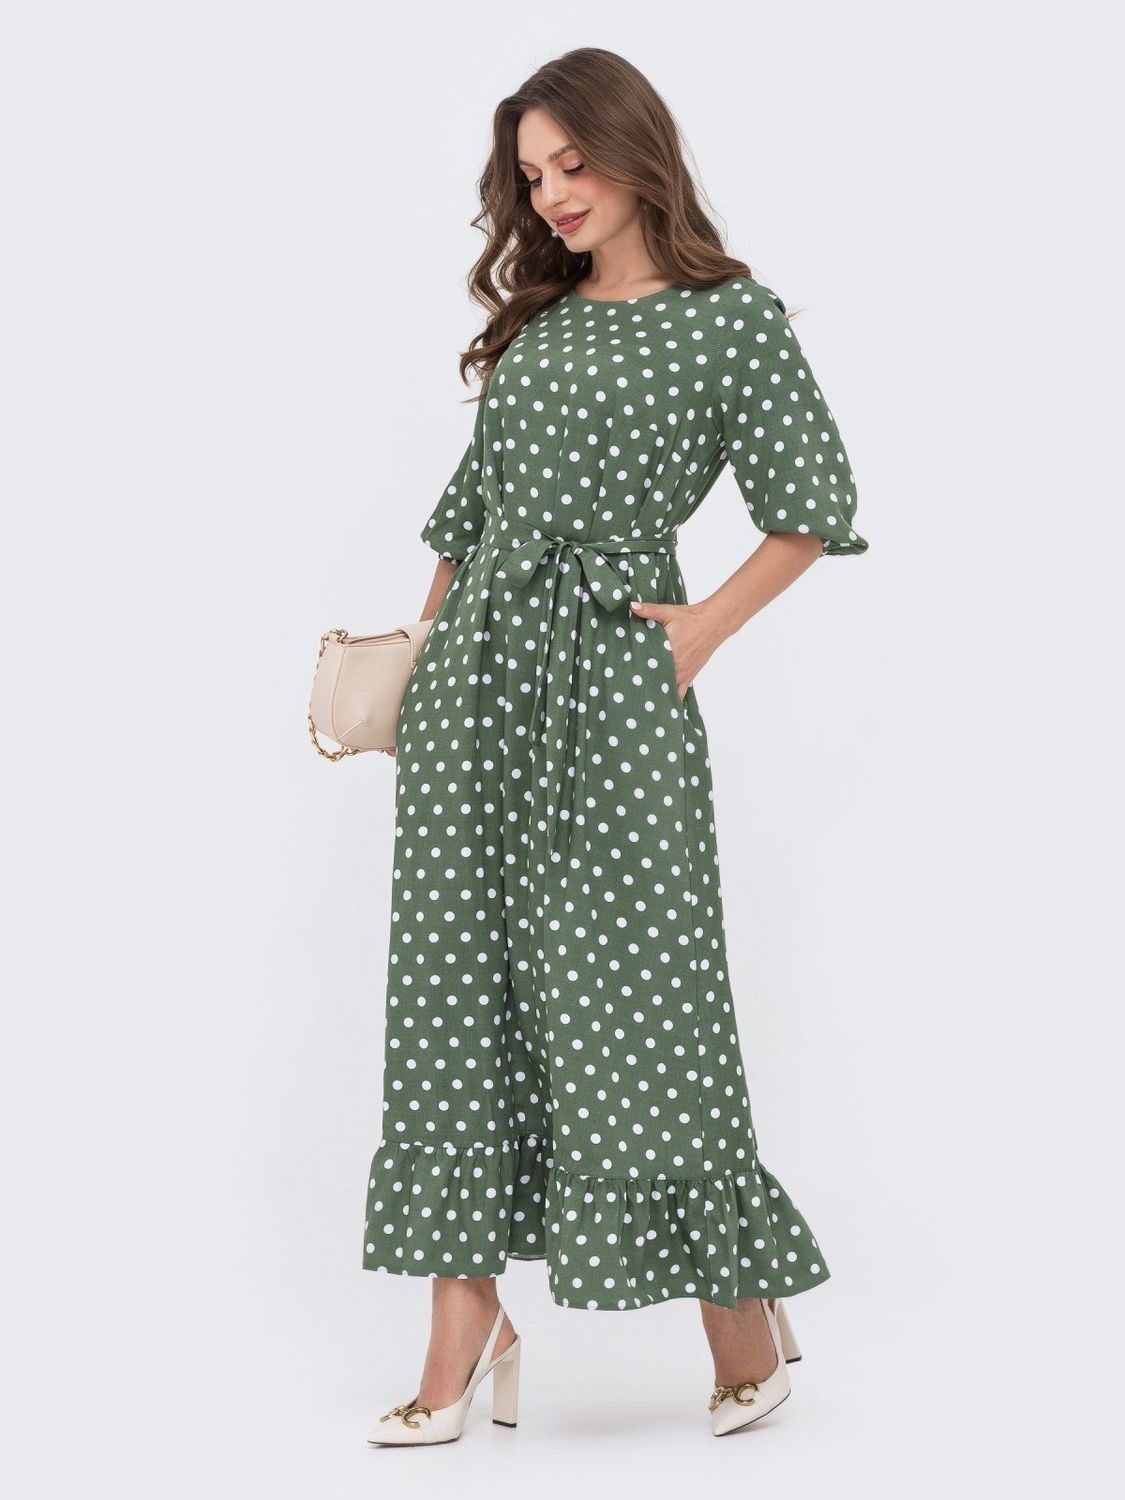 Довге плаття в горошок на весну-літо зеленого кольору - фото